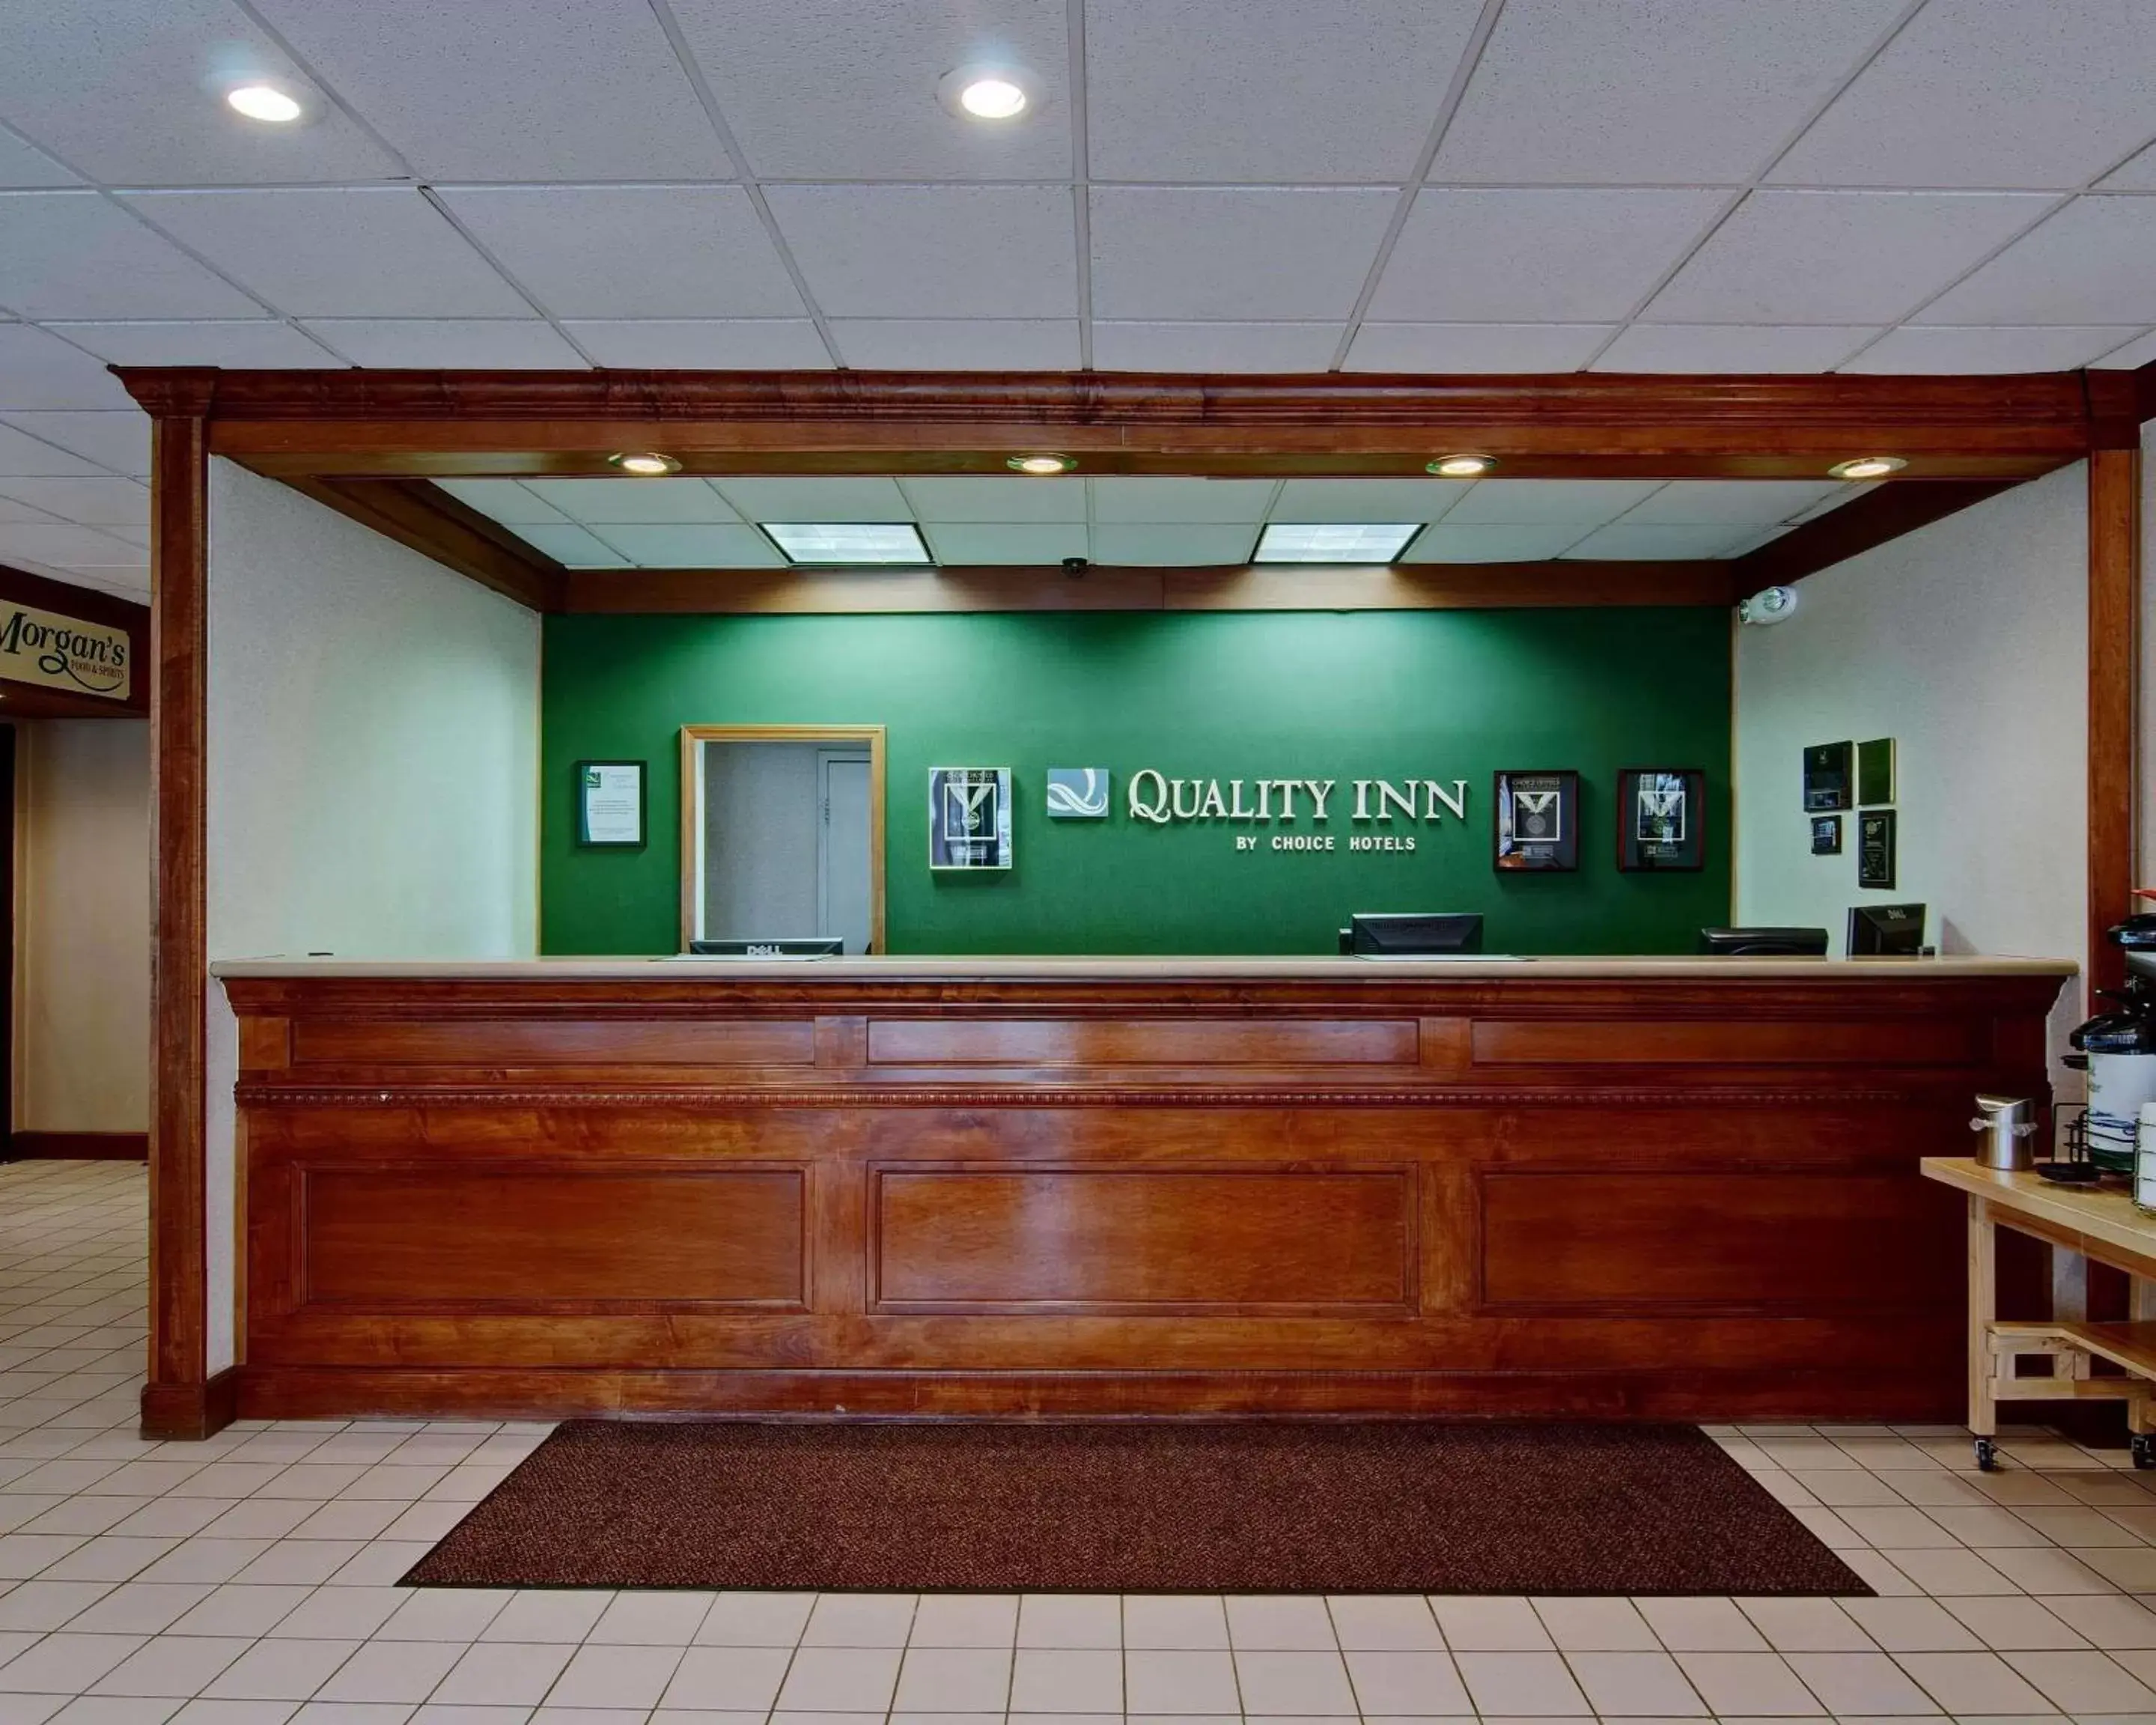 Lobby or reception, Lobby/Reception in Quality Inn Beckley